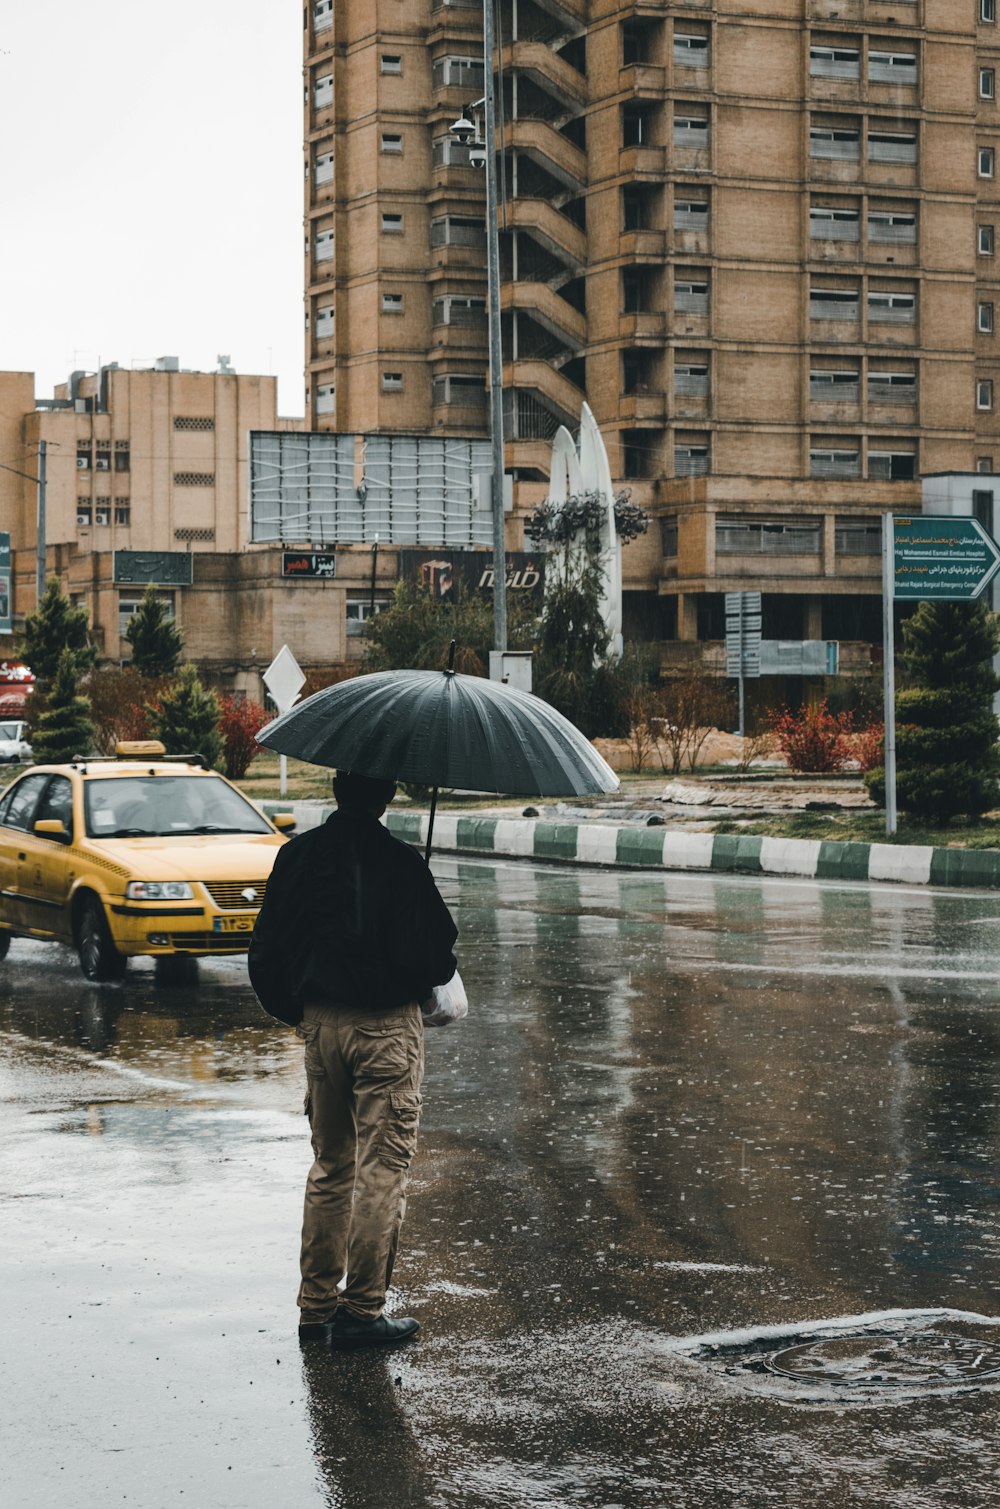 Mann mit Regenschirm, der in der Nähe von Fahrzeugen und Gebäuden steht